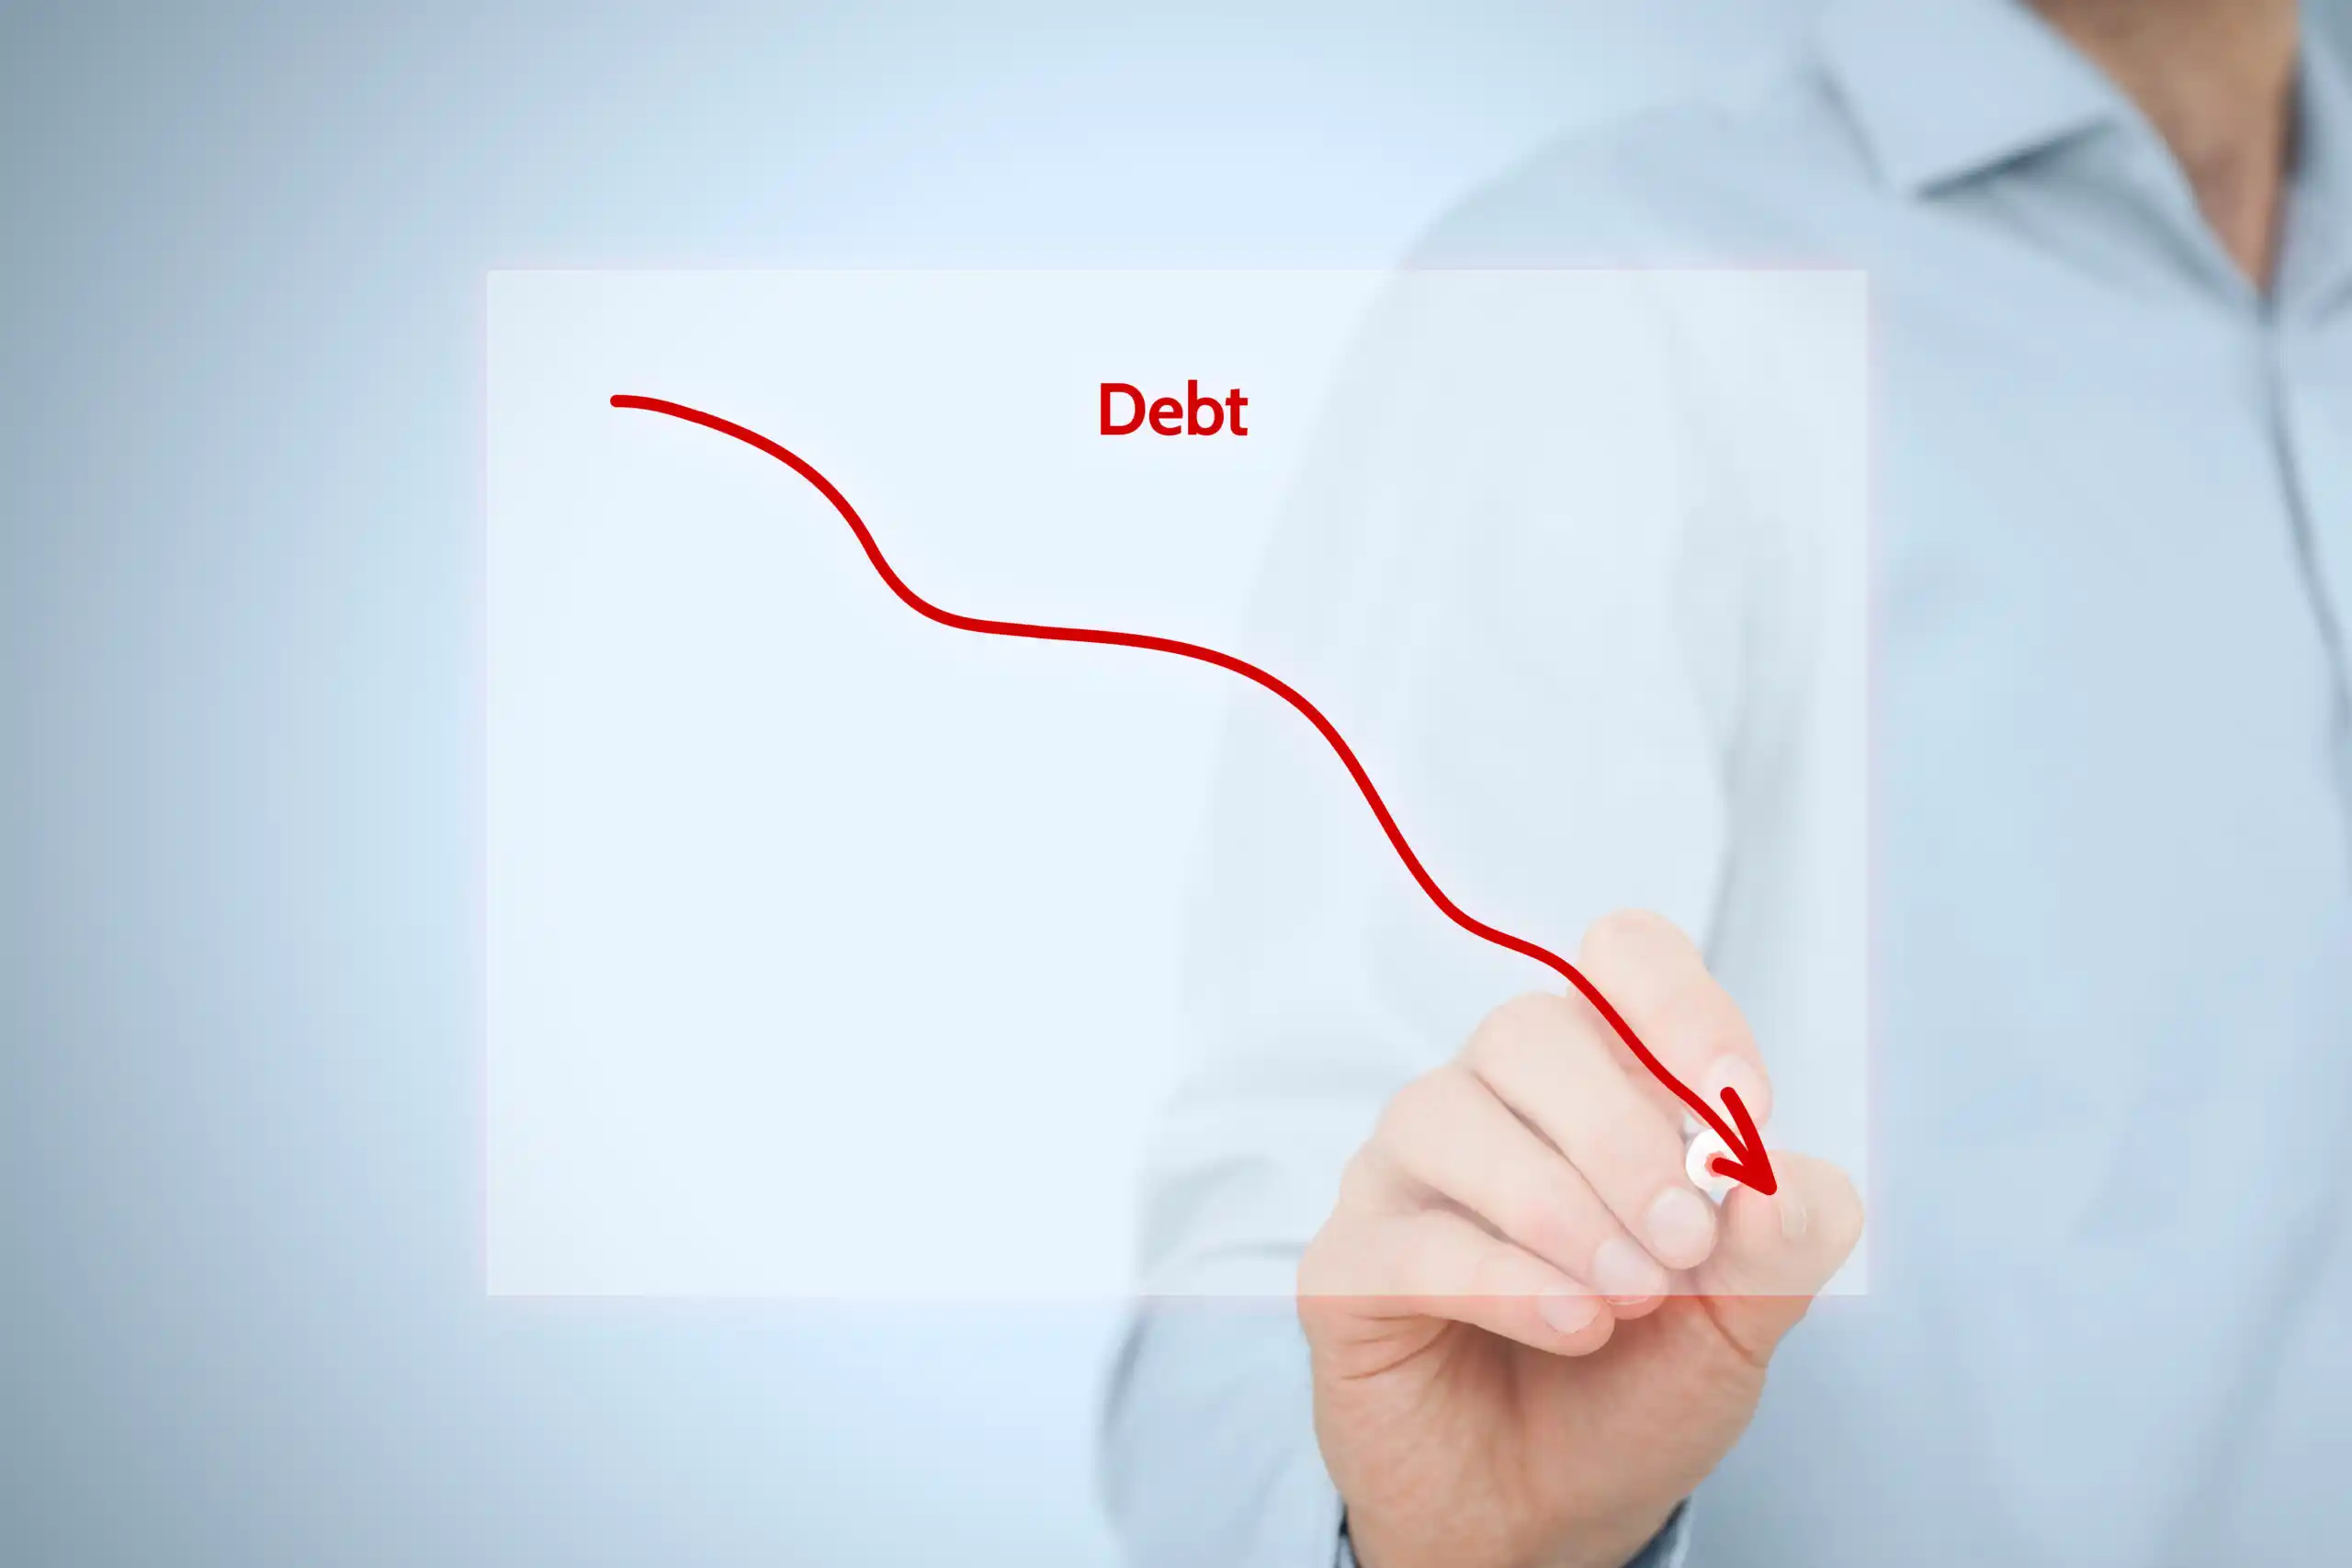 Debt Reduction Plan